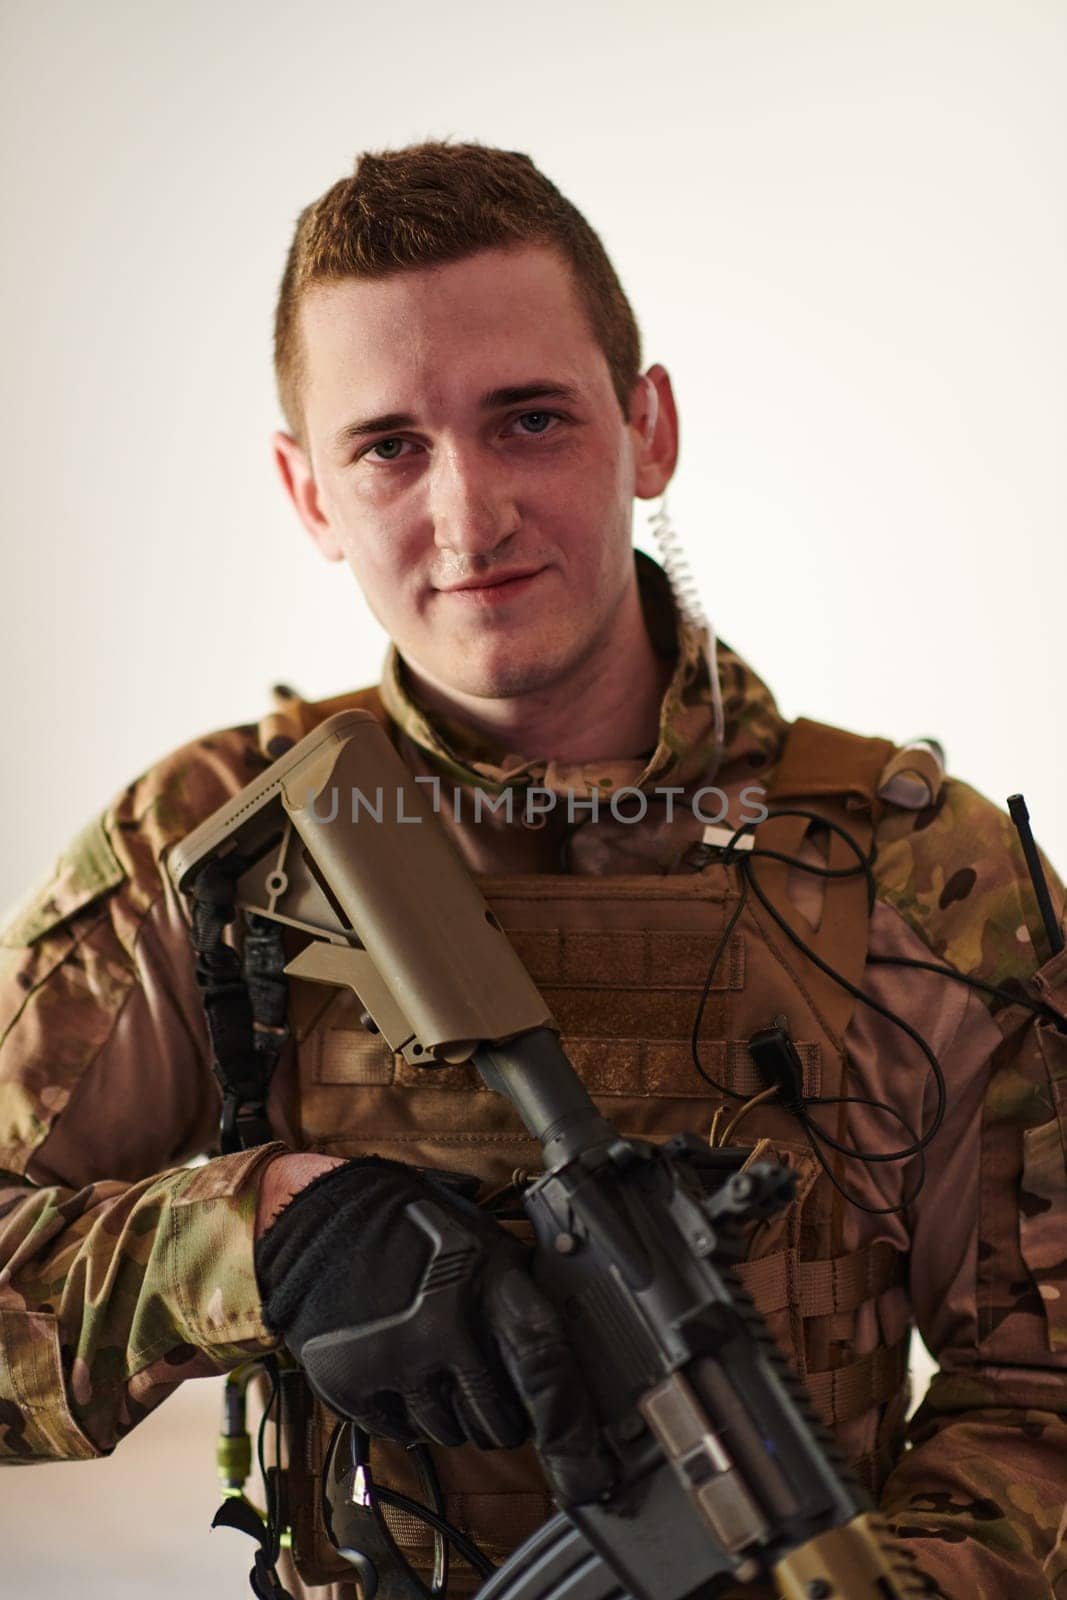 Modern warfare soldier portrait in urban environment by dotshock